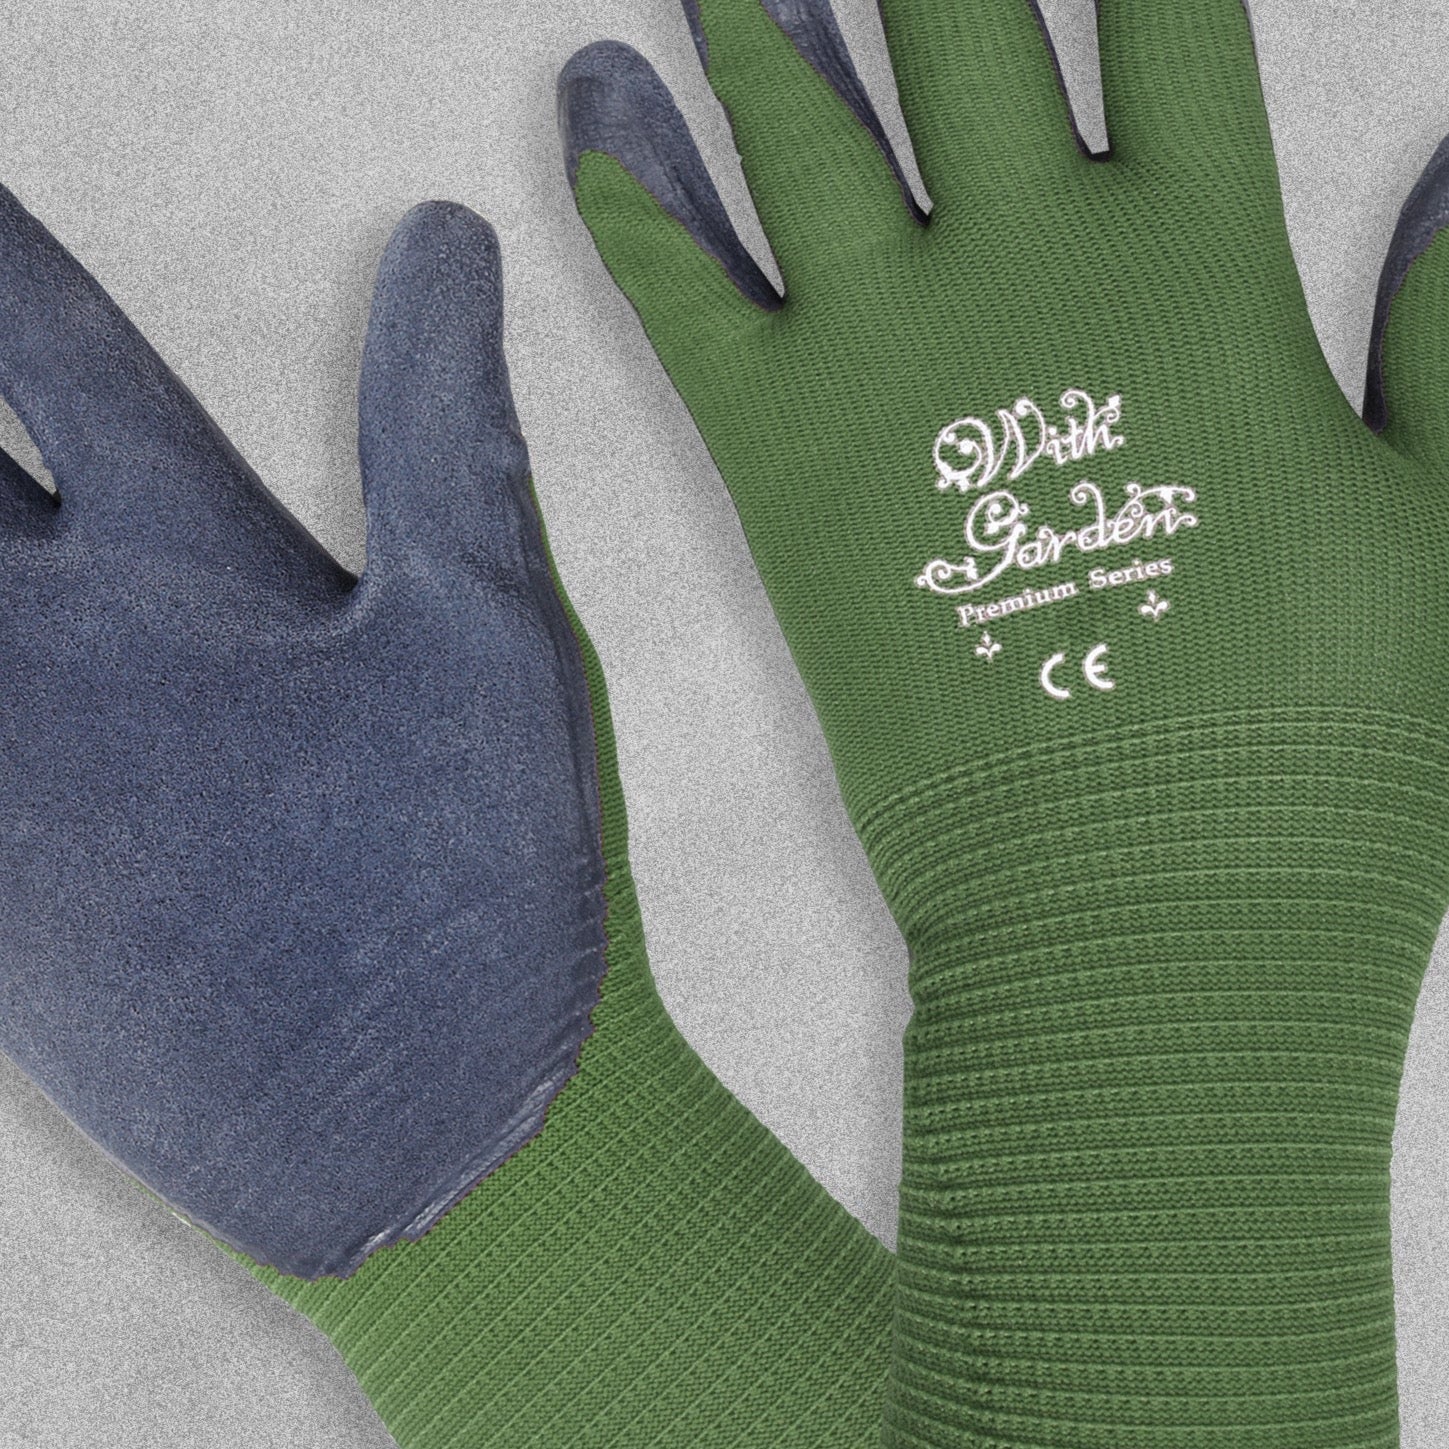 With Garden Premium Garden gloves - Green